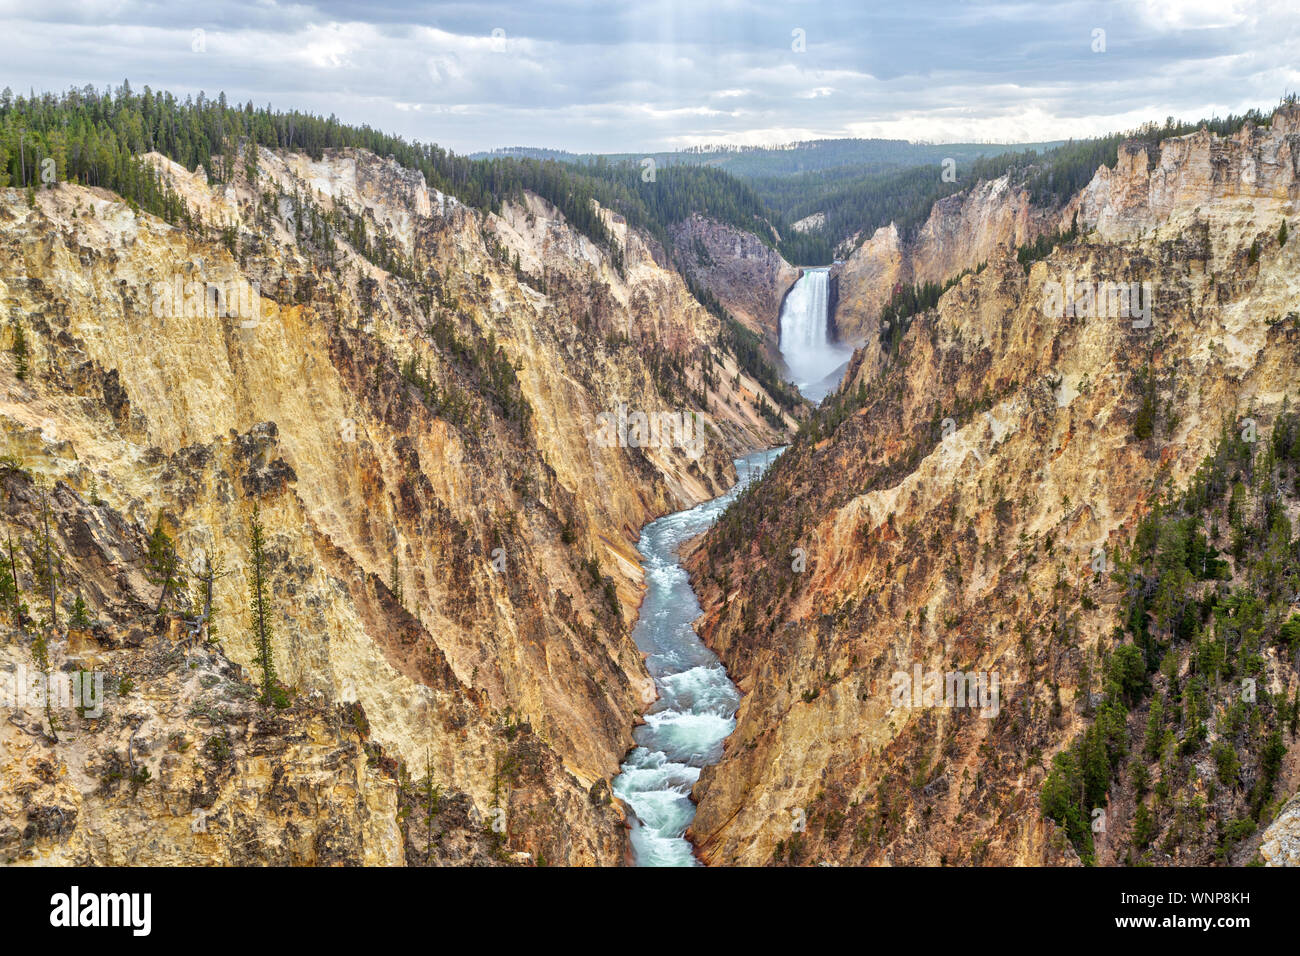 Lower Falls et Grand Canyon de la Yellowstone de Artist Point. Le canyon est de 20 miles de long, plus de 1 000 pieds de profondeur, et jusqu'à 4 000 pieds de largeur. Banque D'Images